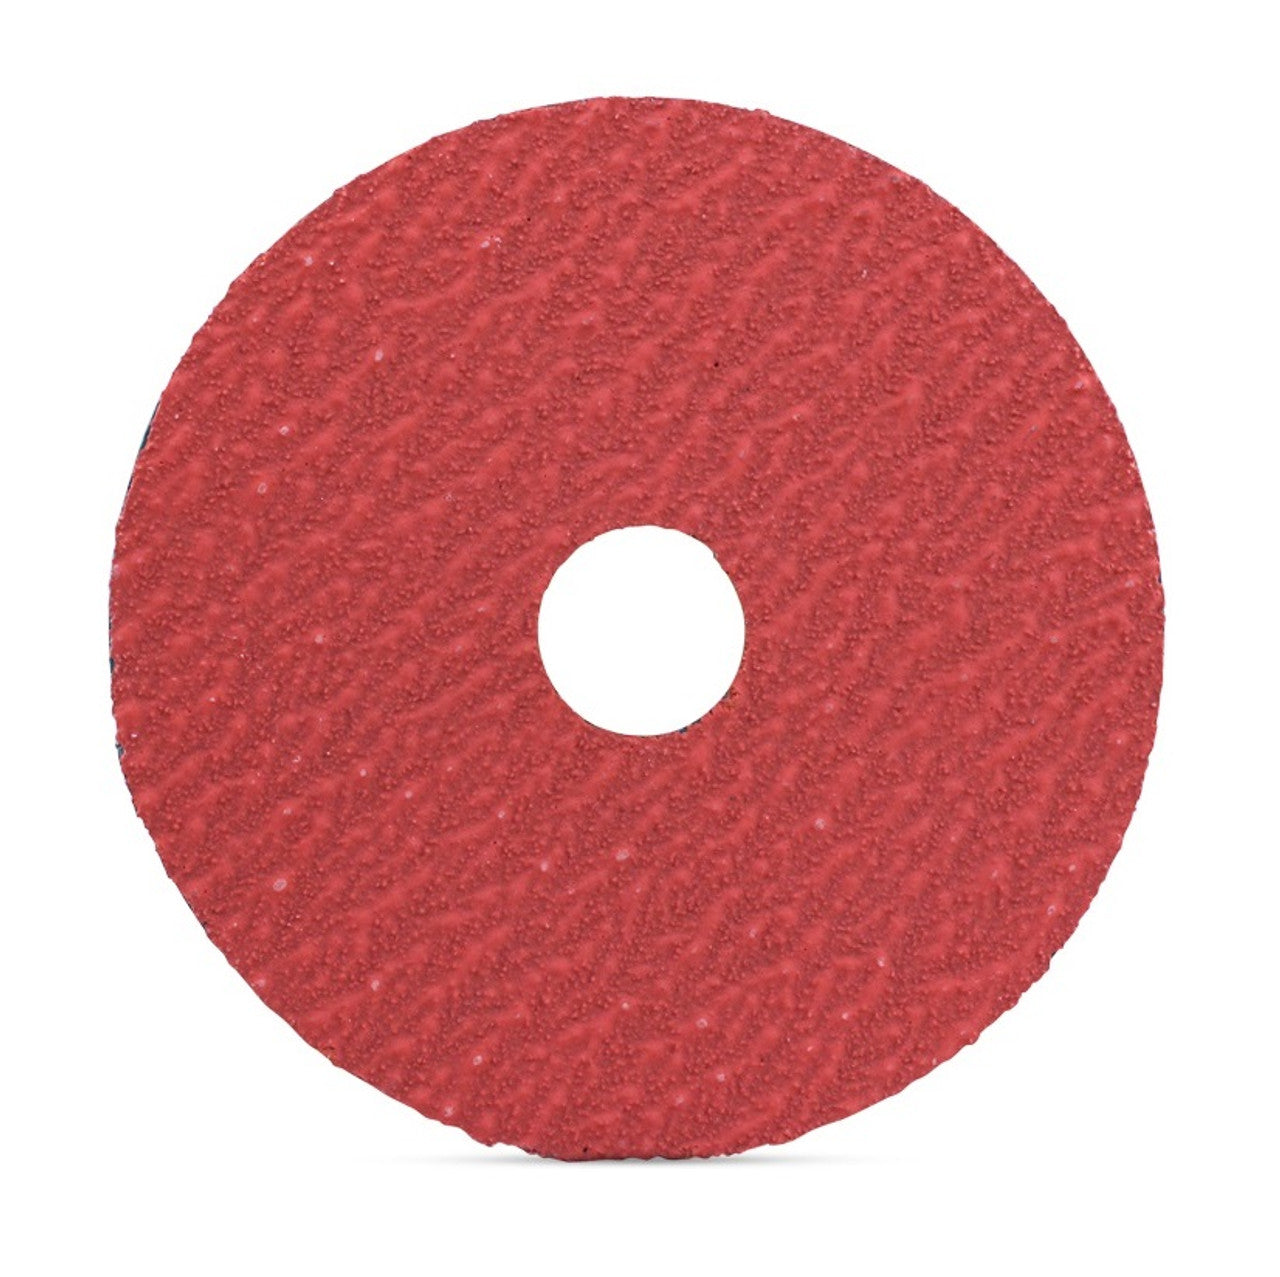 5" x 7/8" Ceramic Resin Fiber Sanding Discs